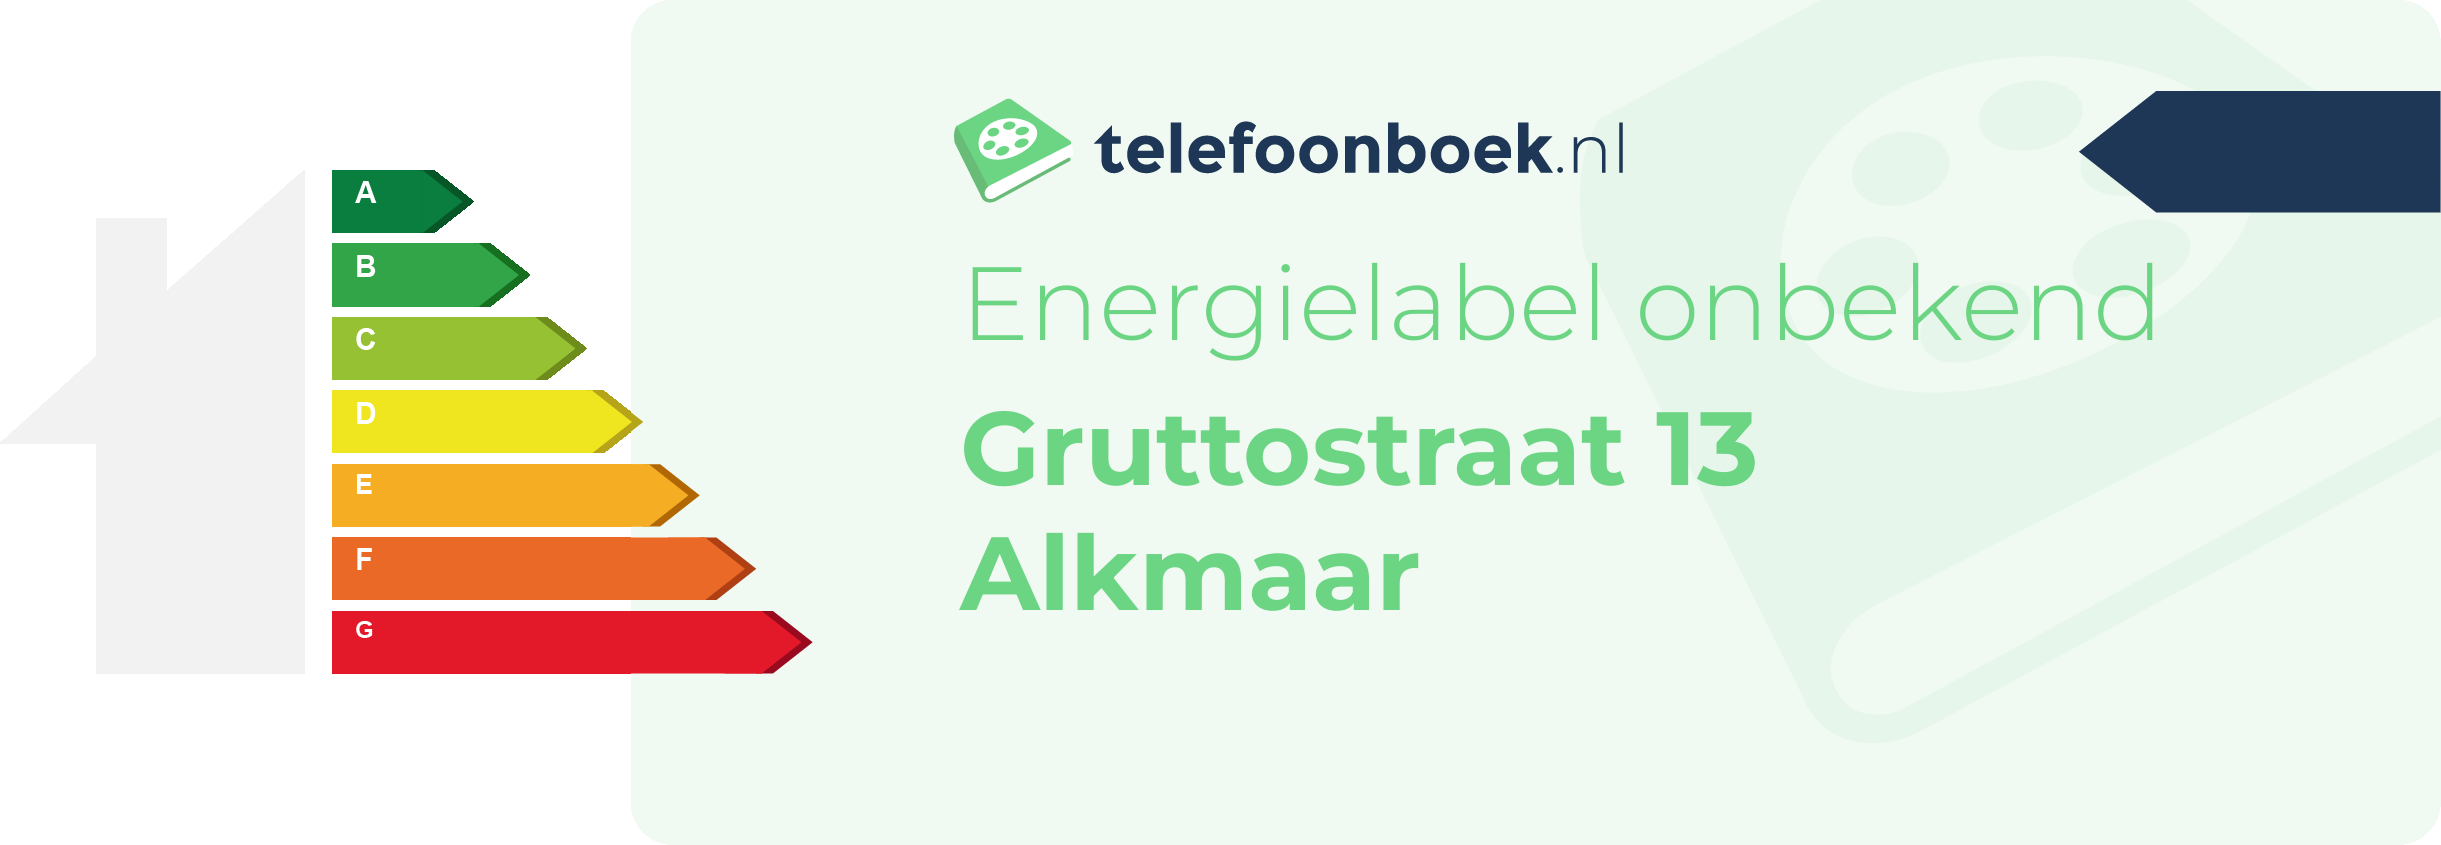 Energielabel Gruttostraat 13 Alkmaar